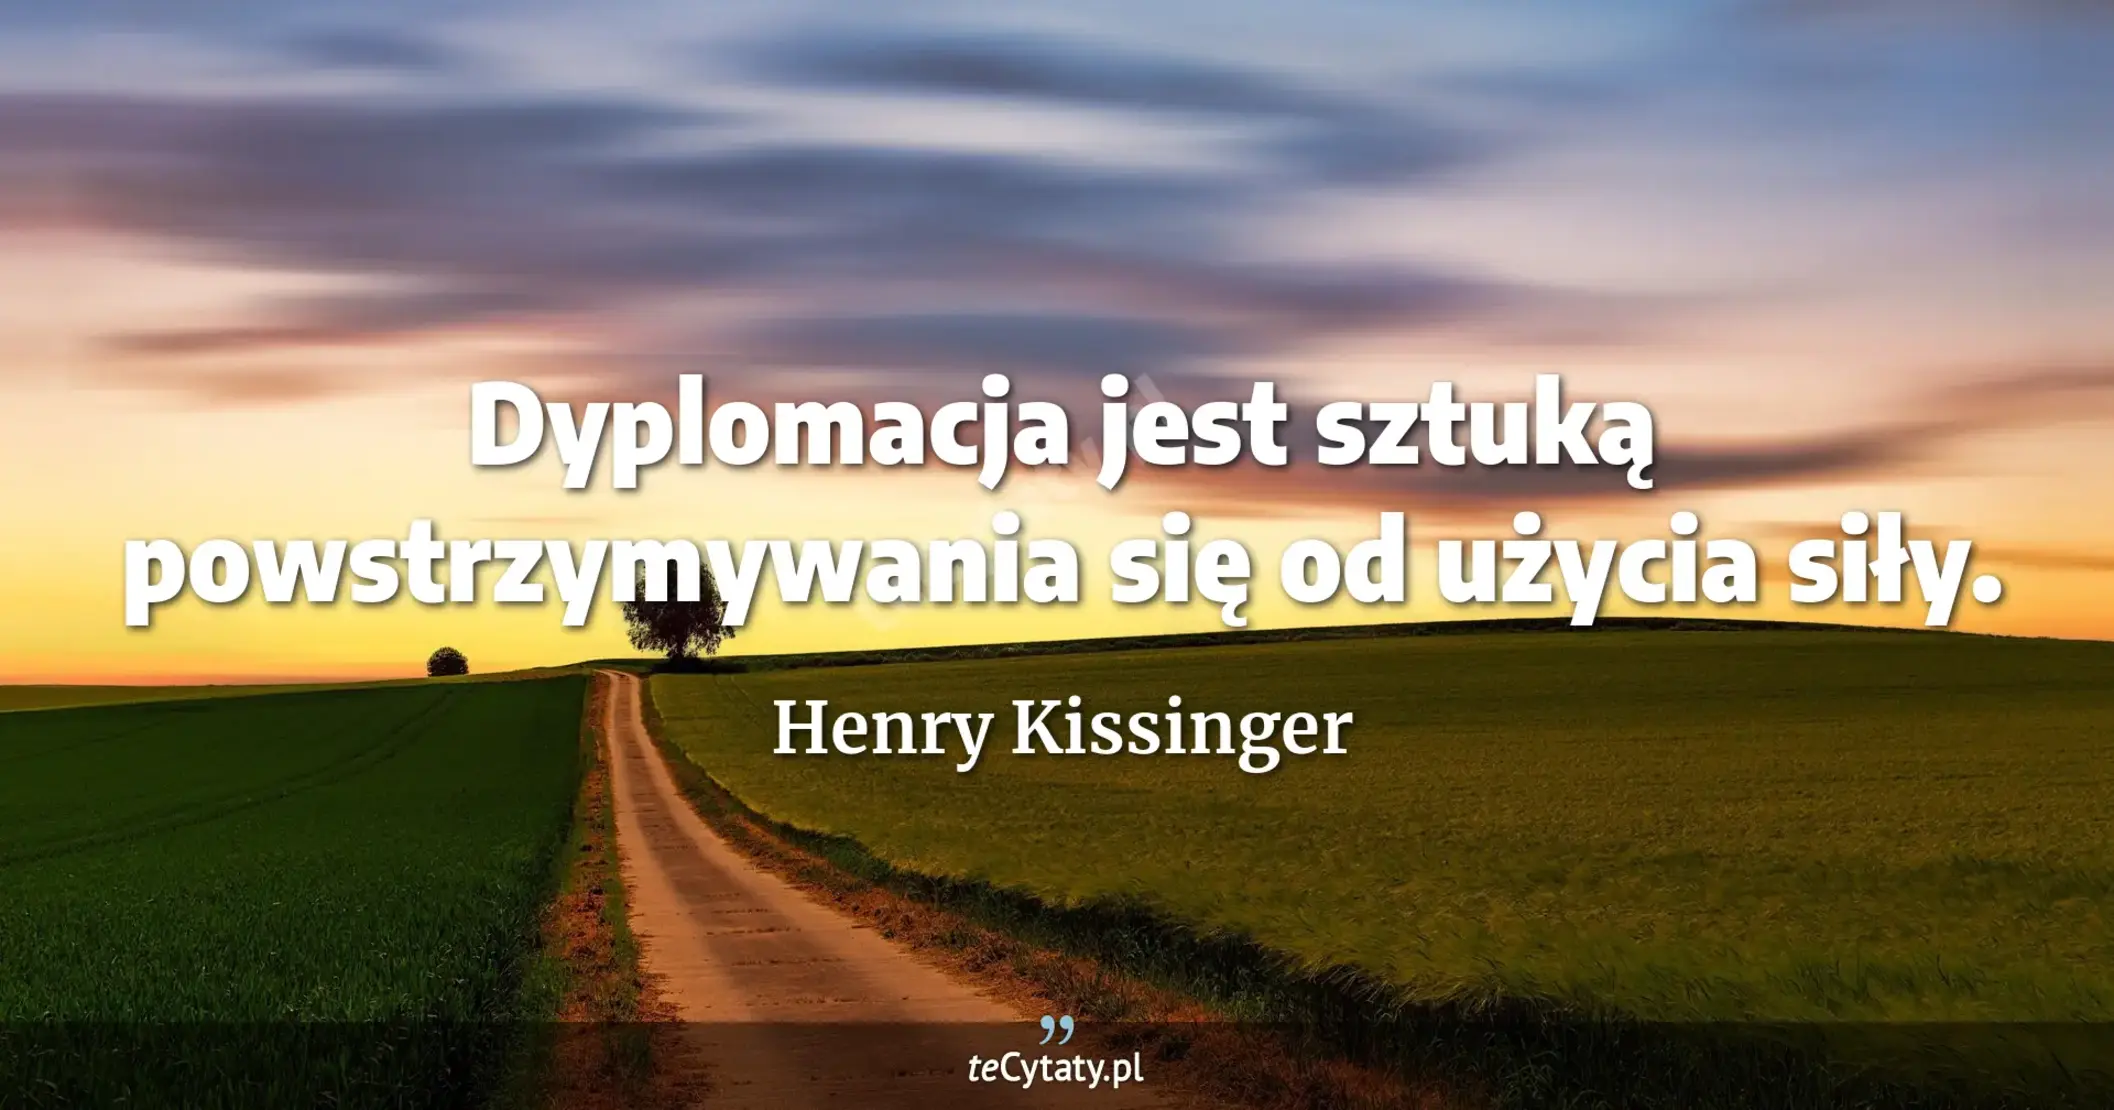 Dyplomacja jest sztuką powstrzymywania się od użycia siły. - Henry Kissinger